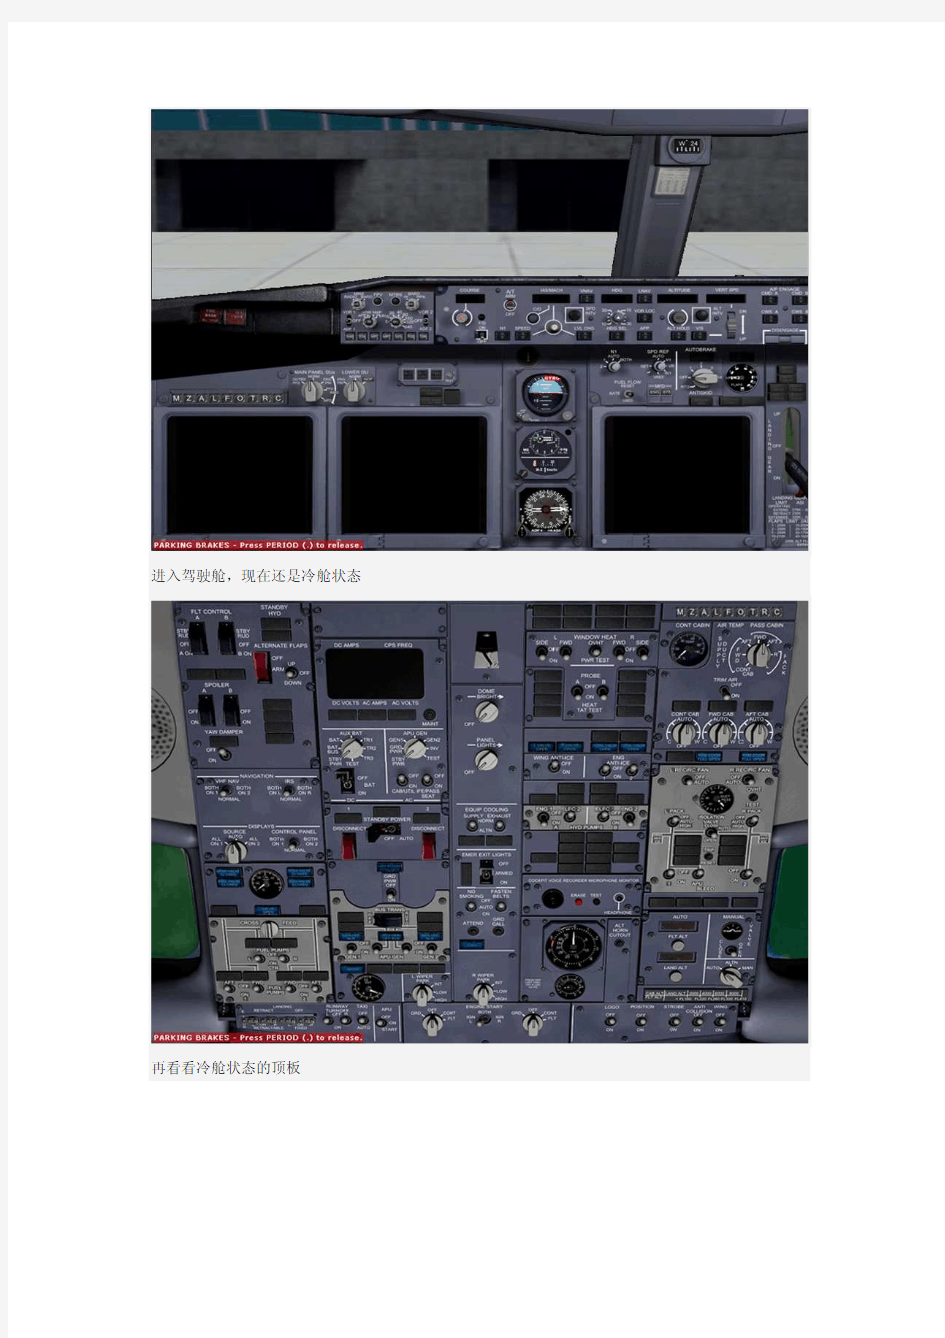 微软模拟飞行教程之B737 冷仓启动图片解说